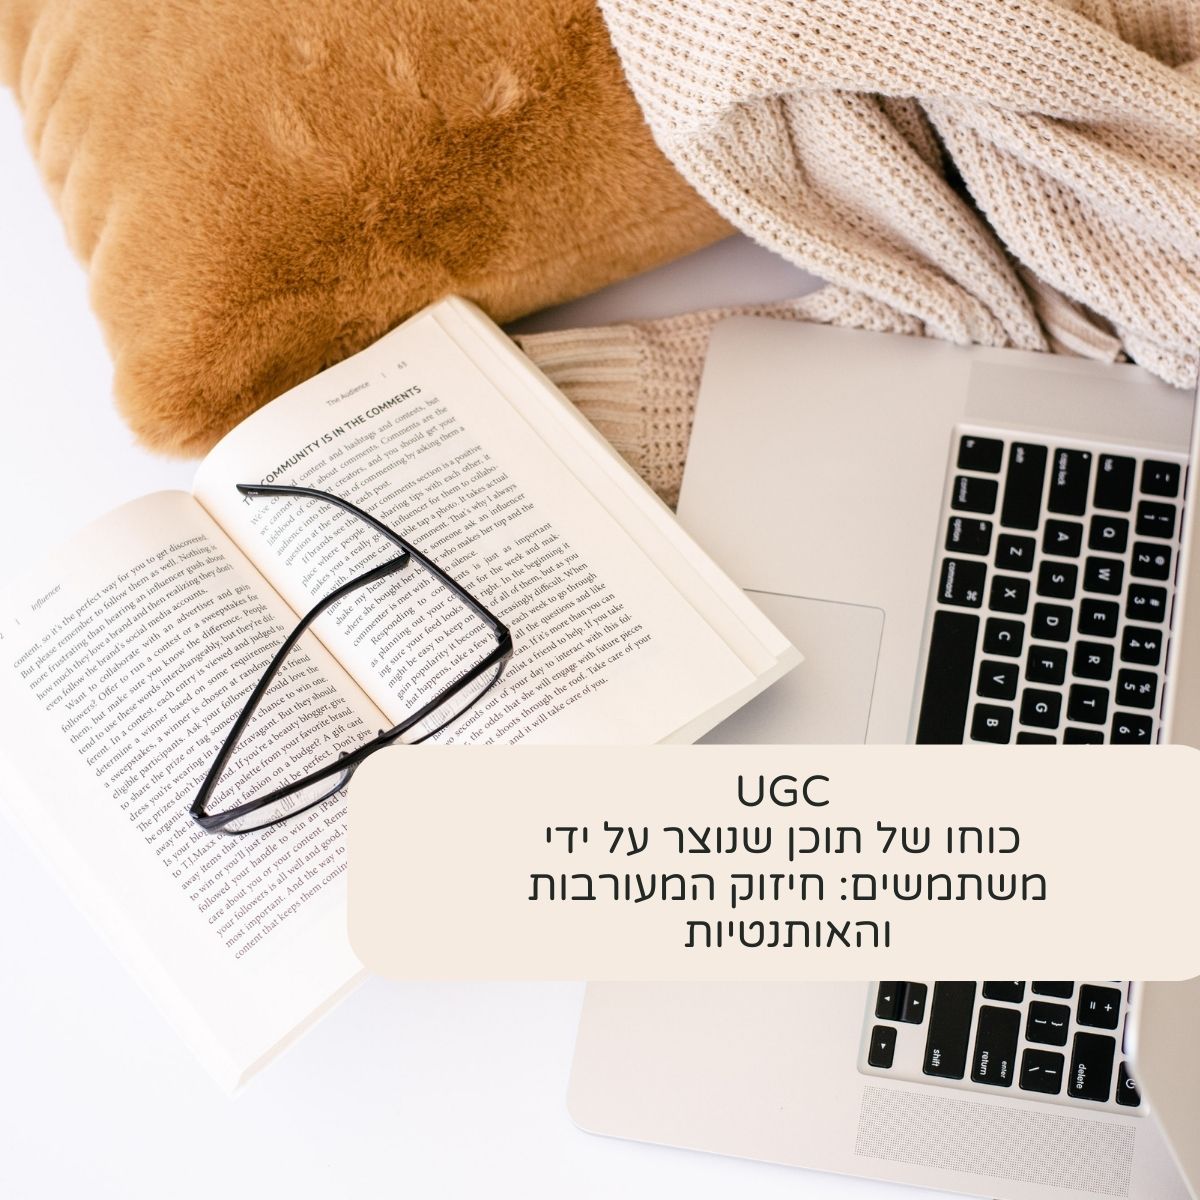 מה זה UGC? כוחו של תוכן שנוצר על ידי משתמשים: חיזוק המעורבות והאותנטיות